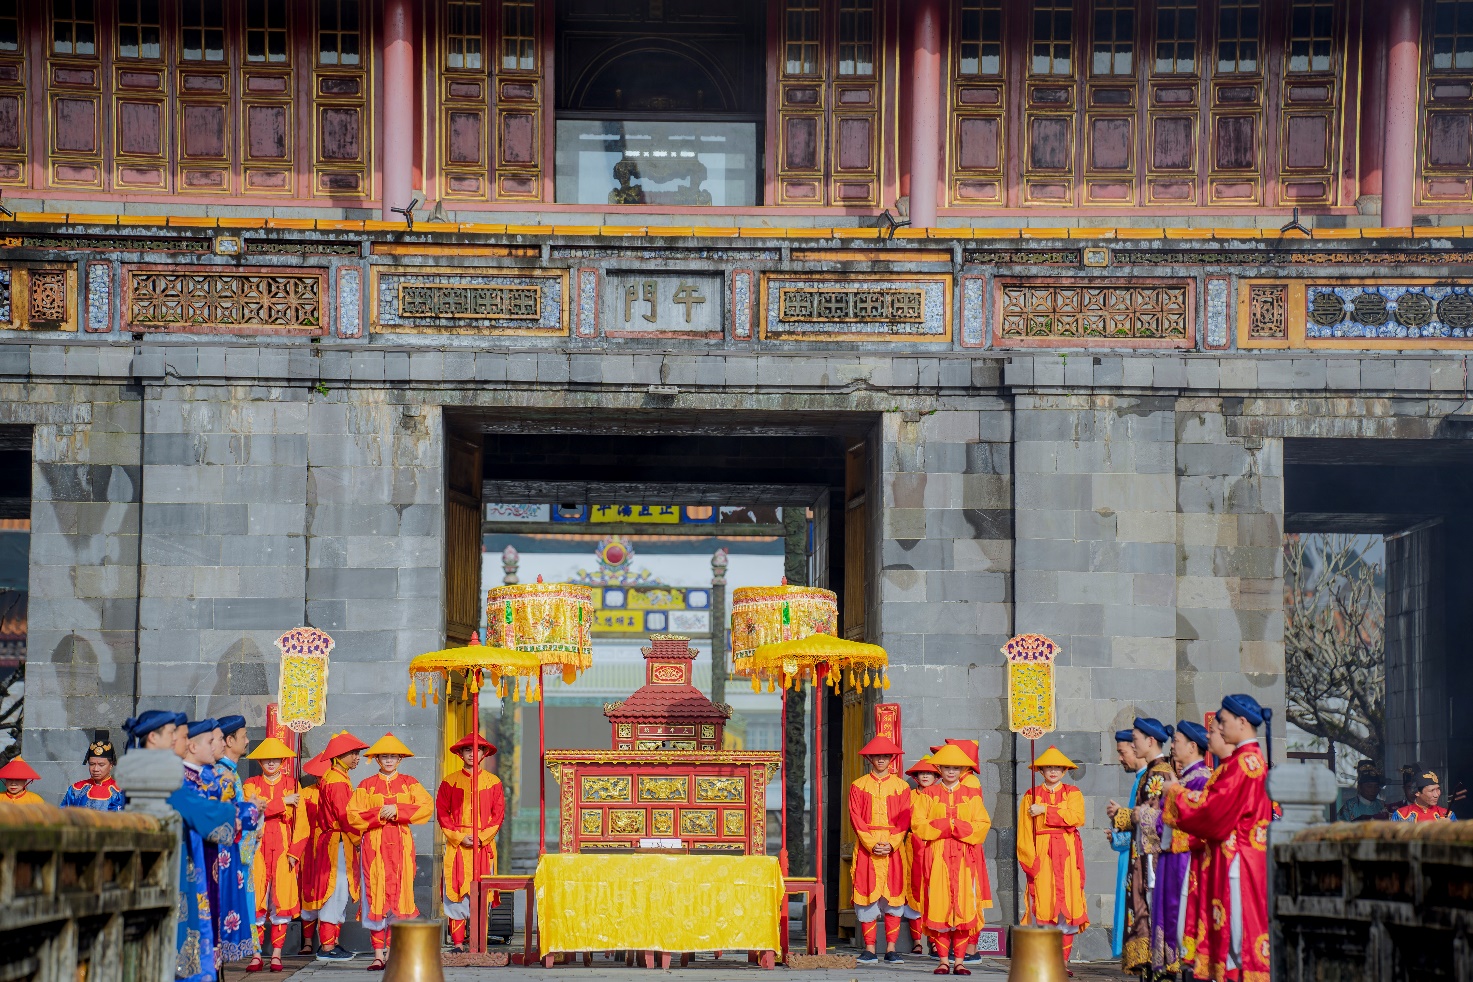 Đầu năm vào Hoàng cung Huế xem tái hiện lễ Ban sóc triều Nguyễn - 2